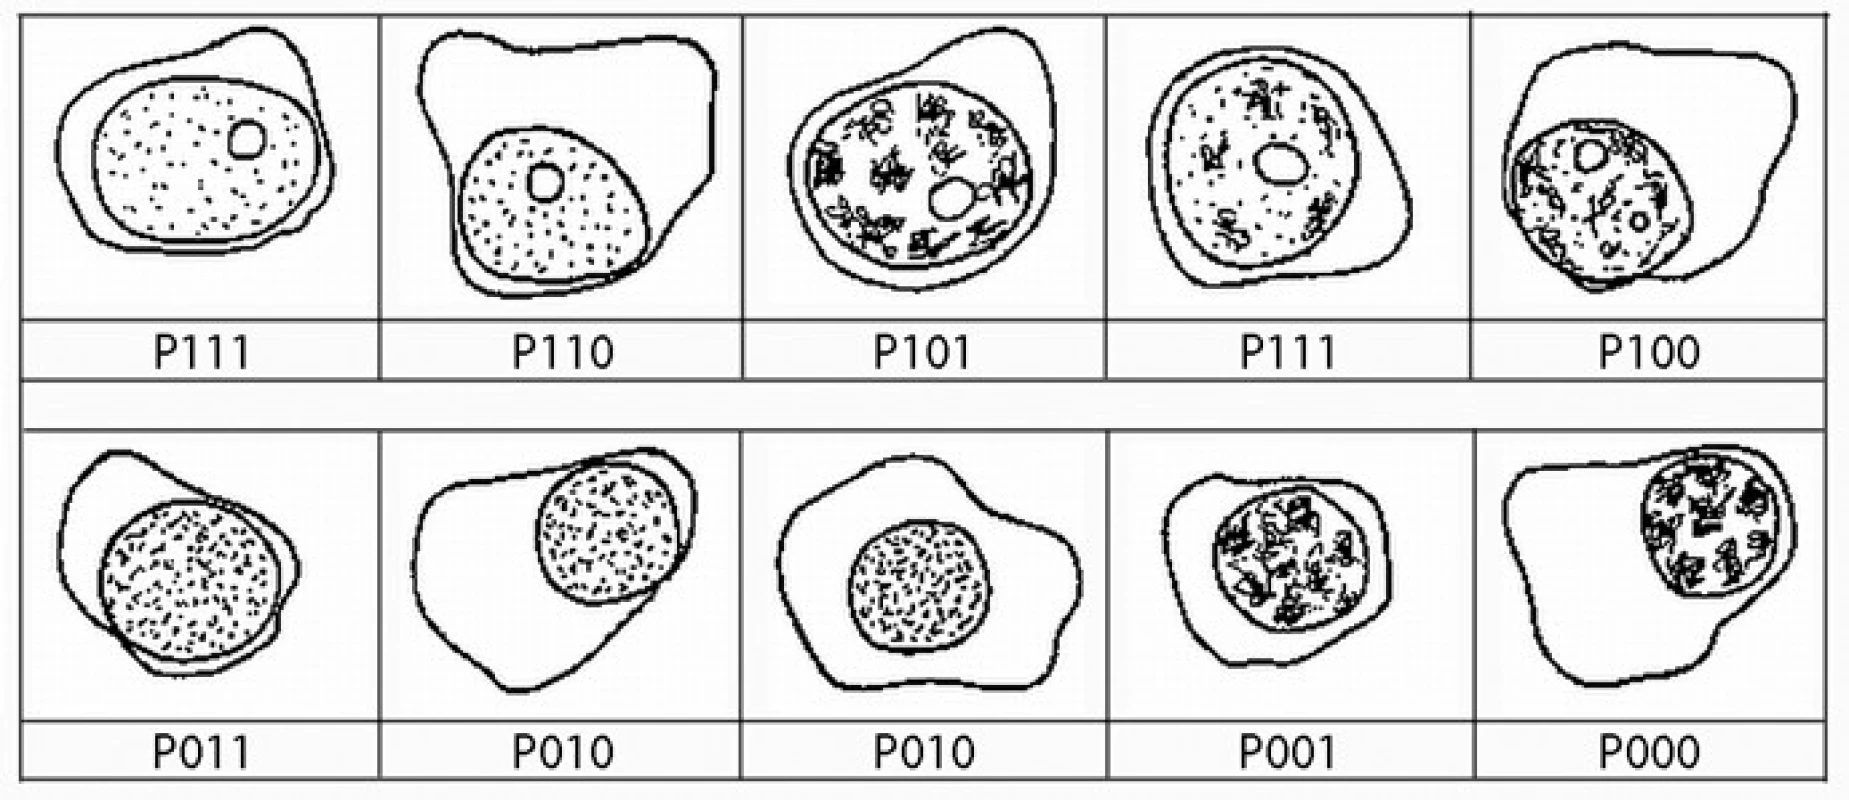 Přehledná zastoupení plazmatických buněk podtypů podle definice algoritmu systému plazmatická buňka, první číslo představuje přítomnost (1) nebo absenci (0) jadérka, druhé číslo představuje přítomnost (1) nebo nepřítomnost (0) blastického chromatinu, poslední číslo představuje přítomnost (1) nebo nepřítomnost (0) N: C poměru &lt; 0,6.